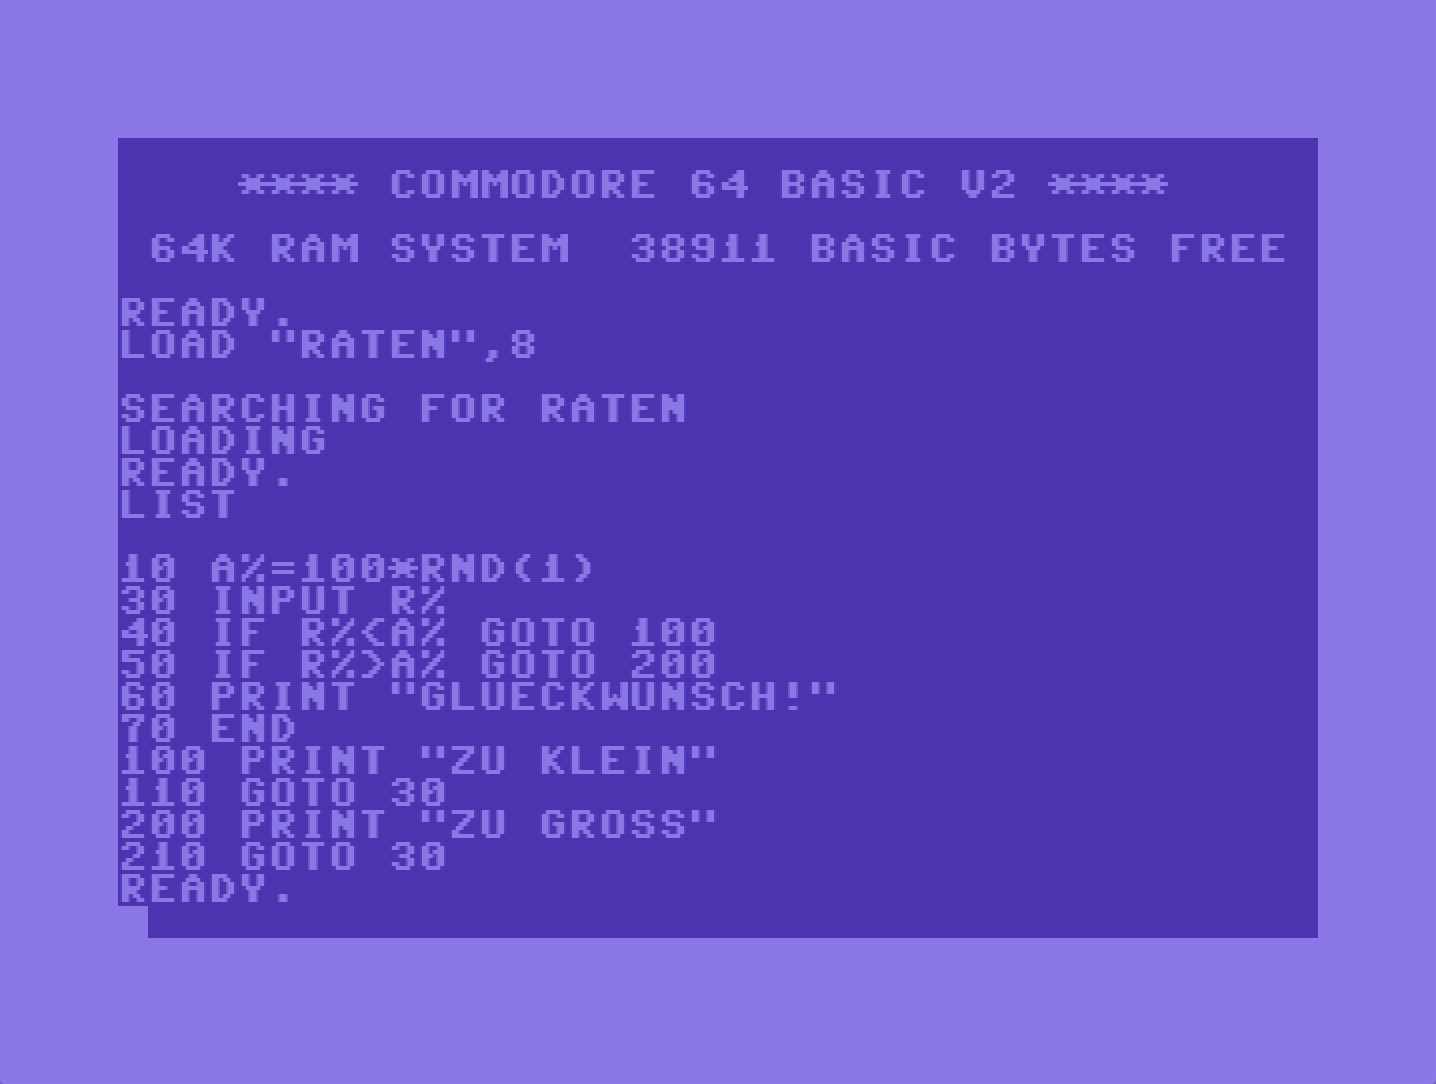 Laden eines Programms am Commodore 64